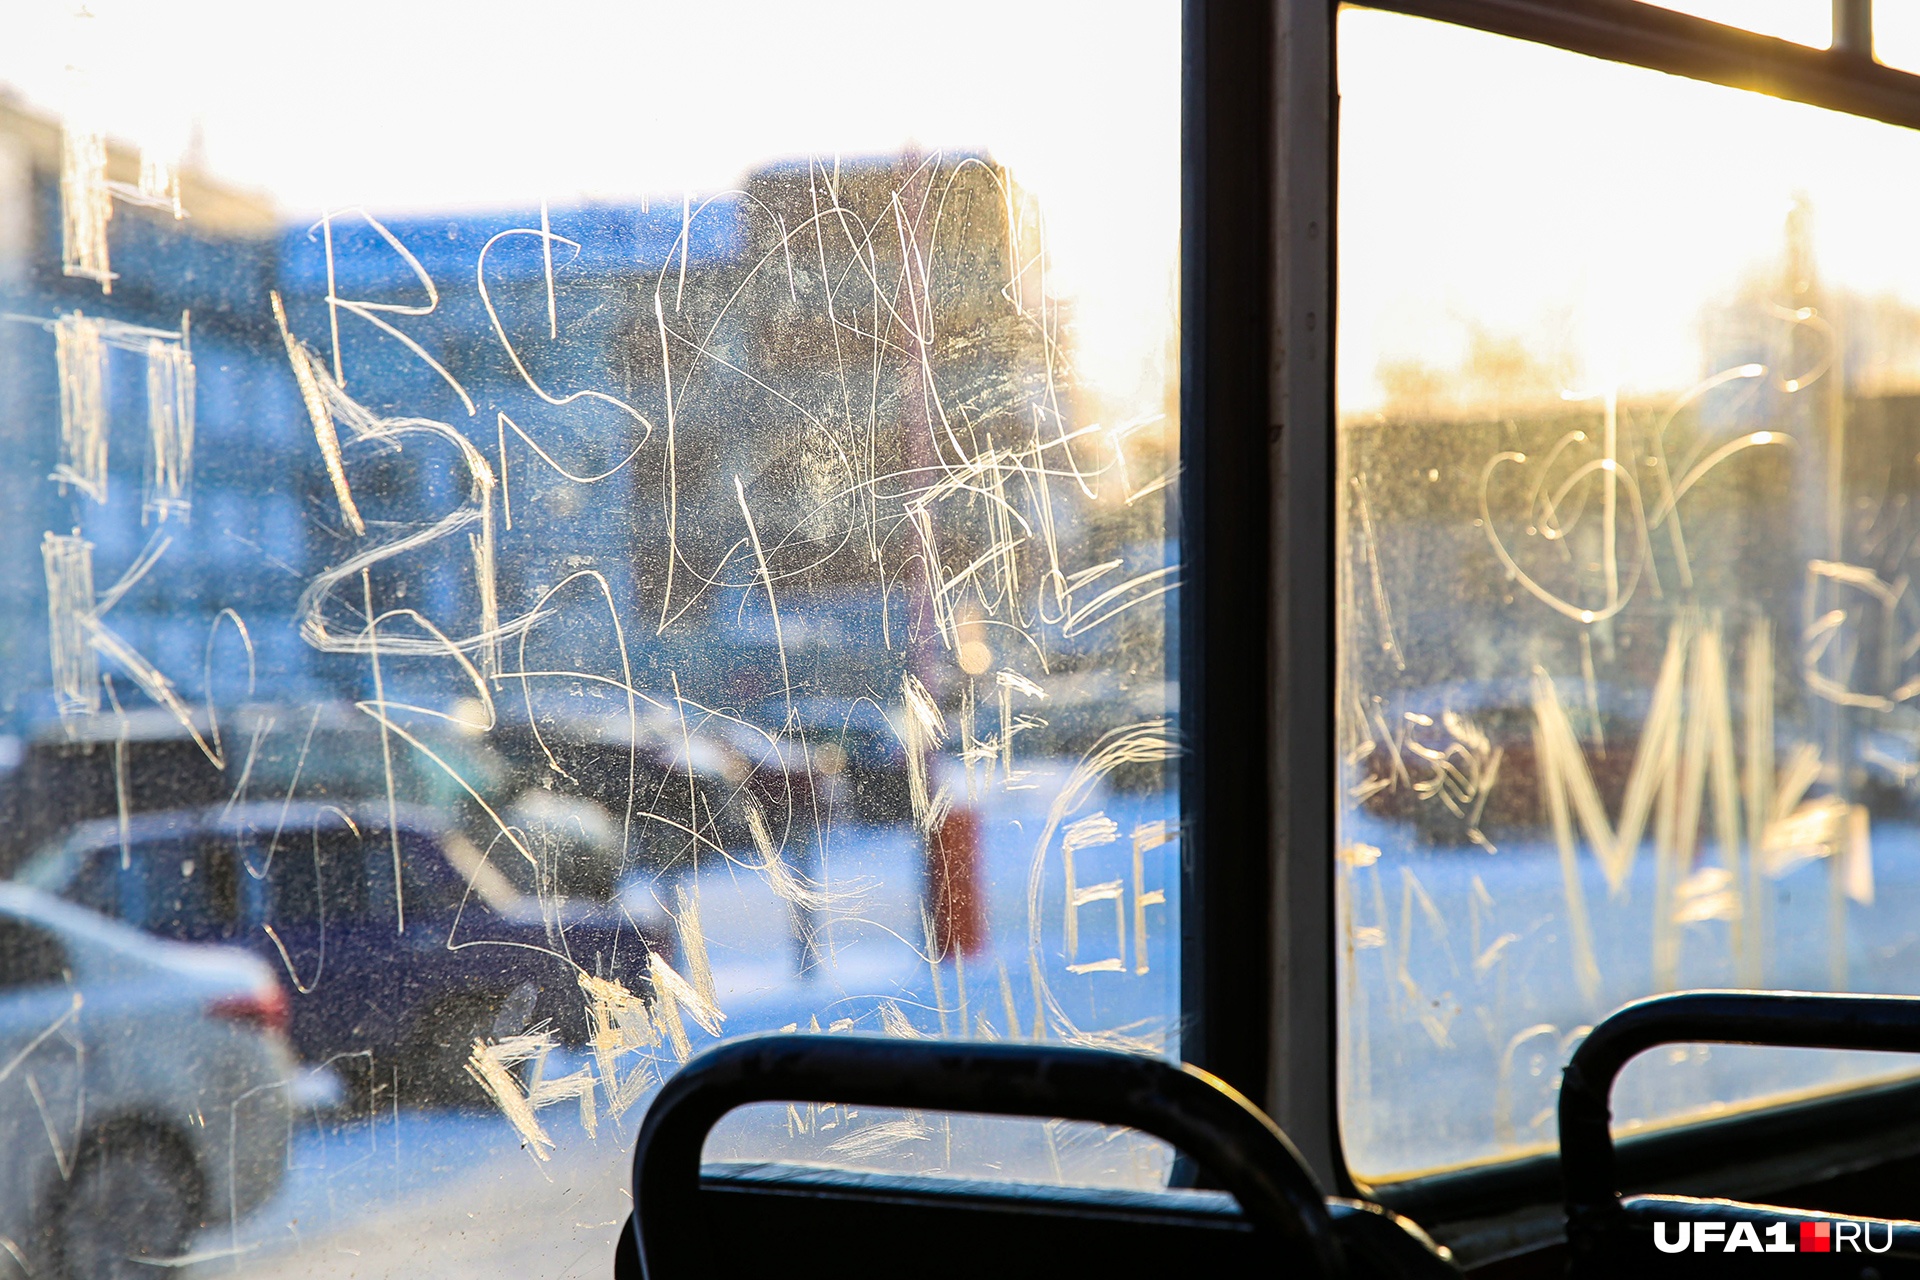 Стекла в трамваях и троллейбусах стали местом для творчества вандалов